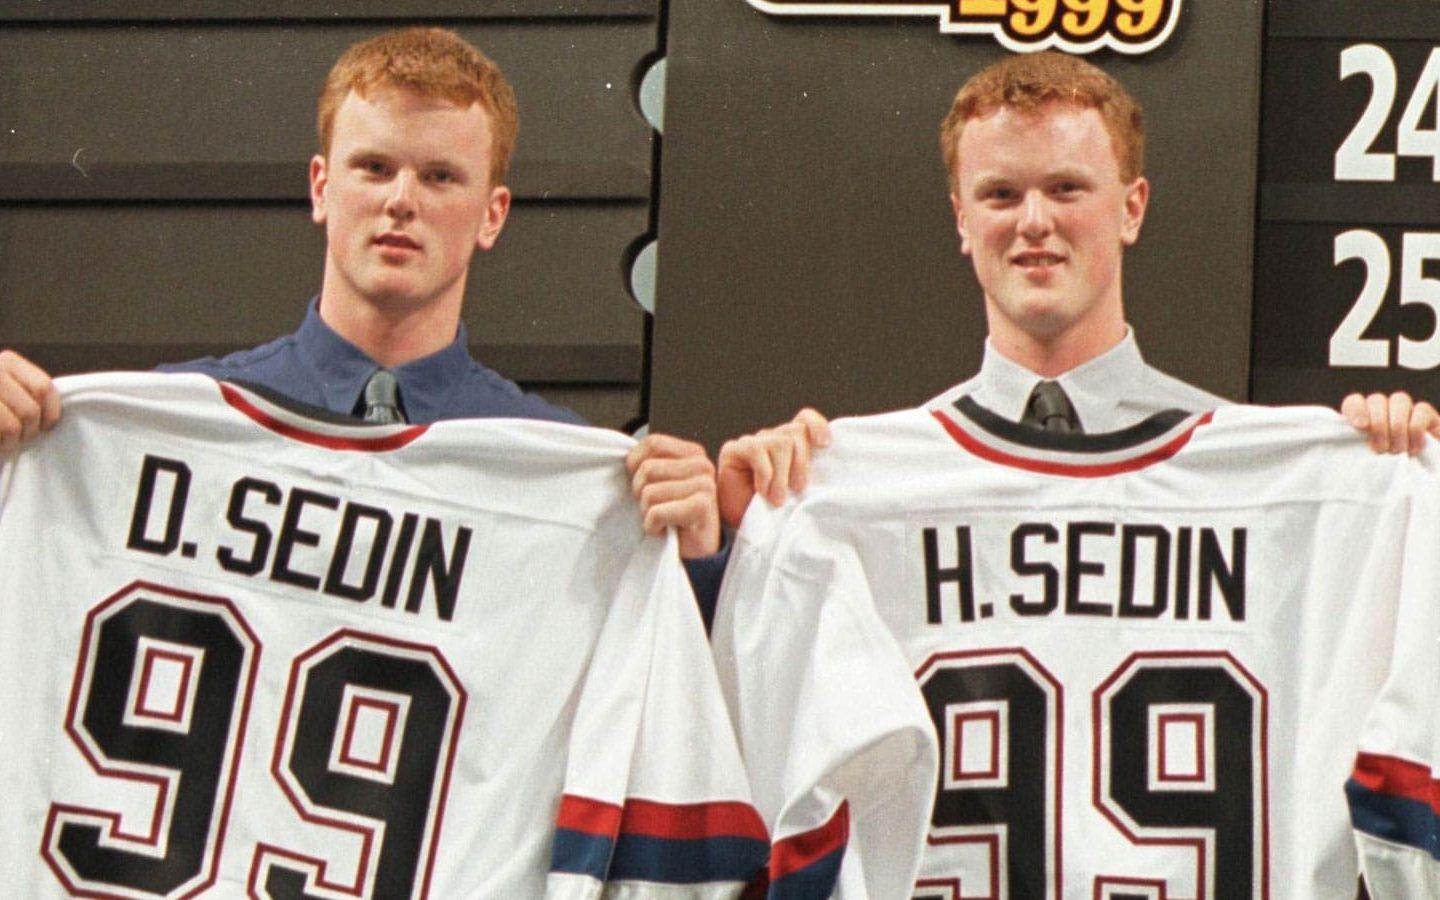 Tvillingarna Sedin, med Daniel till vänster och Henrik till höger, under NHL-draften 1999. Foto: TT